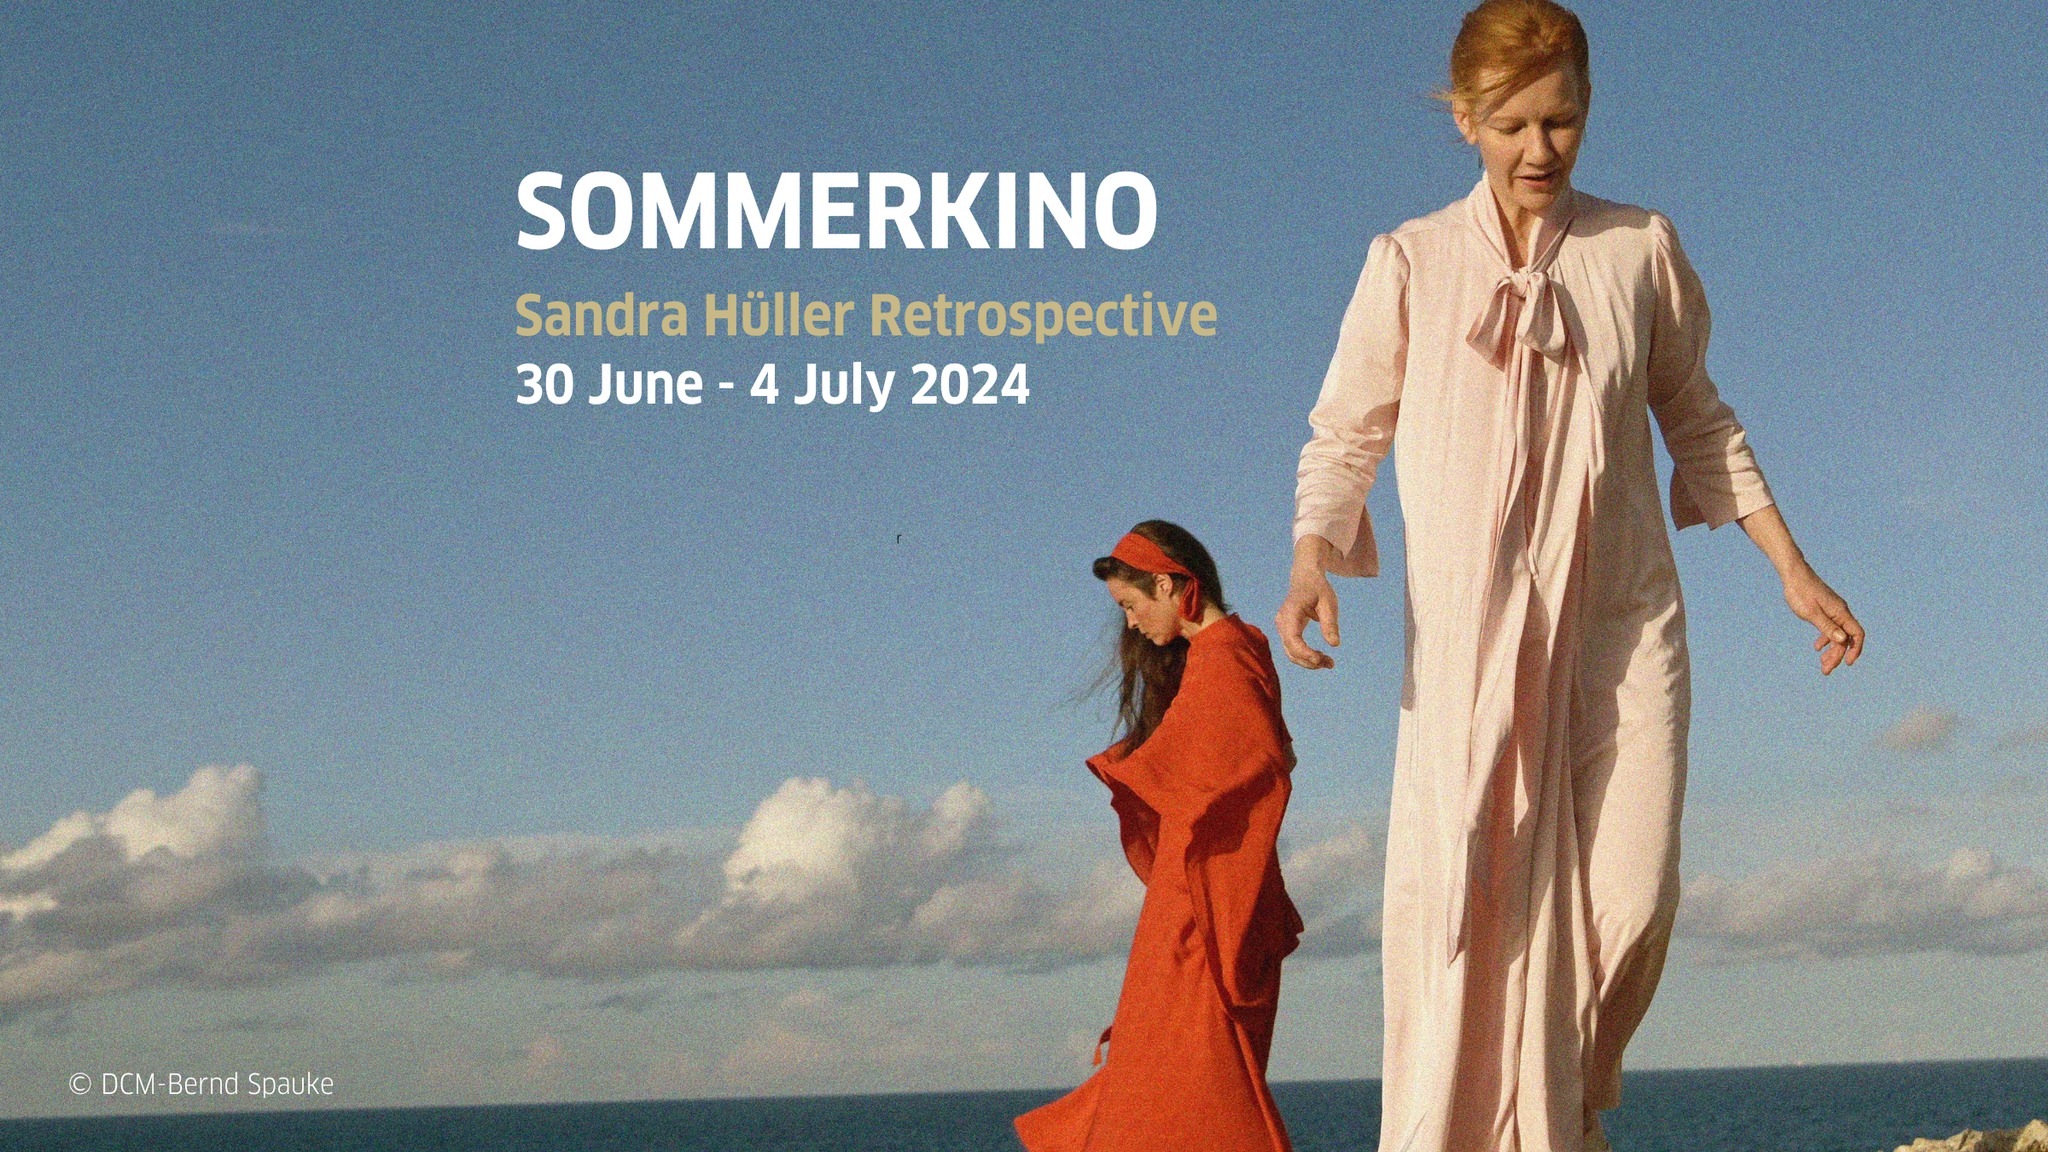 Sommerkino is back with German film screenings